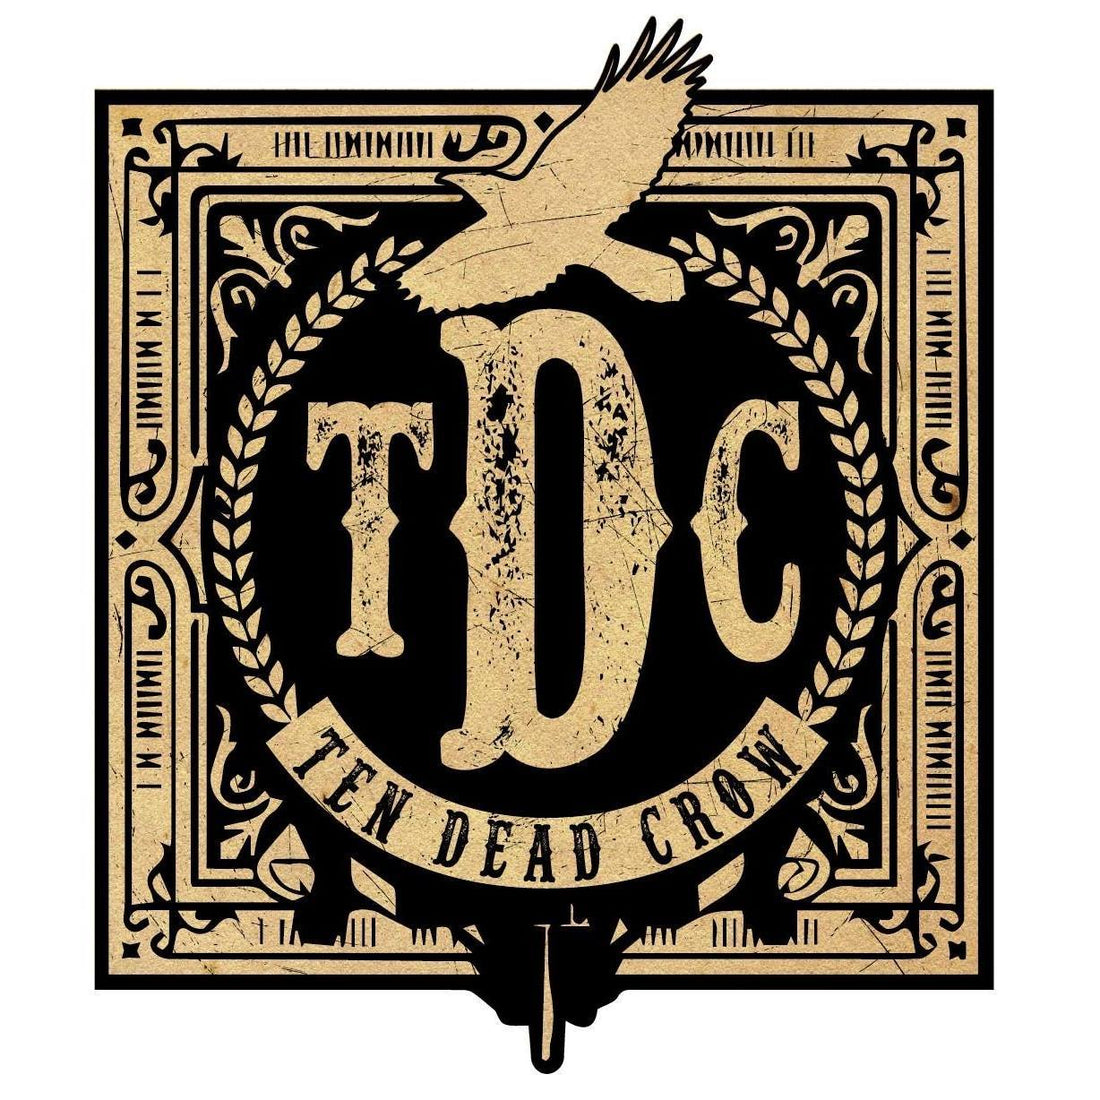 Ten Dead Crow Album Release